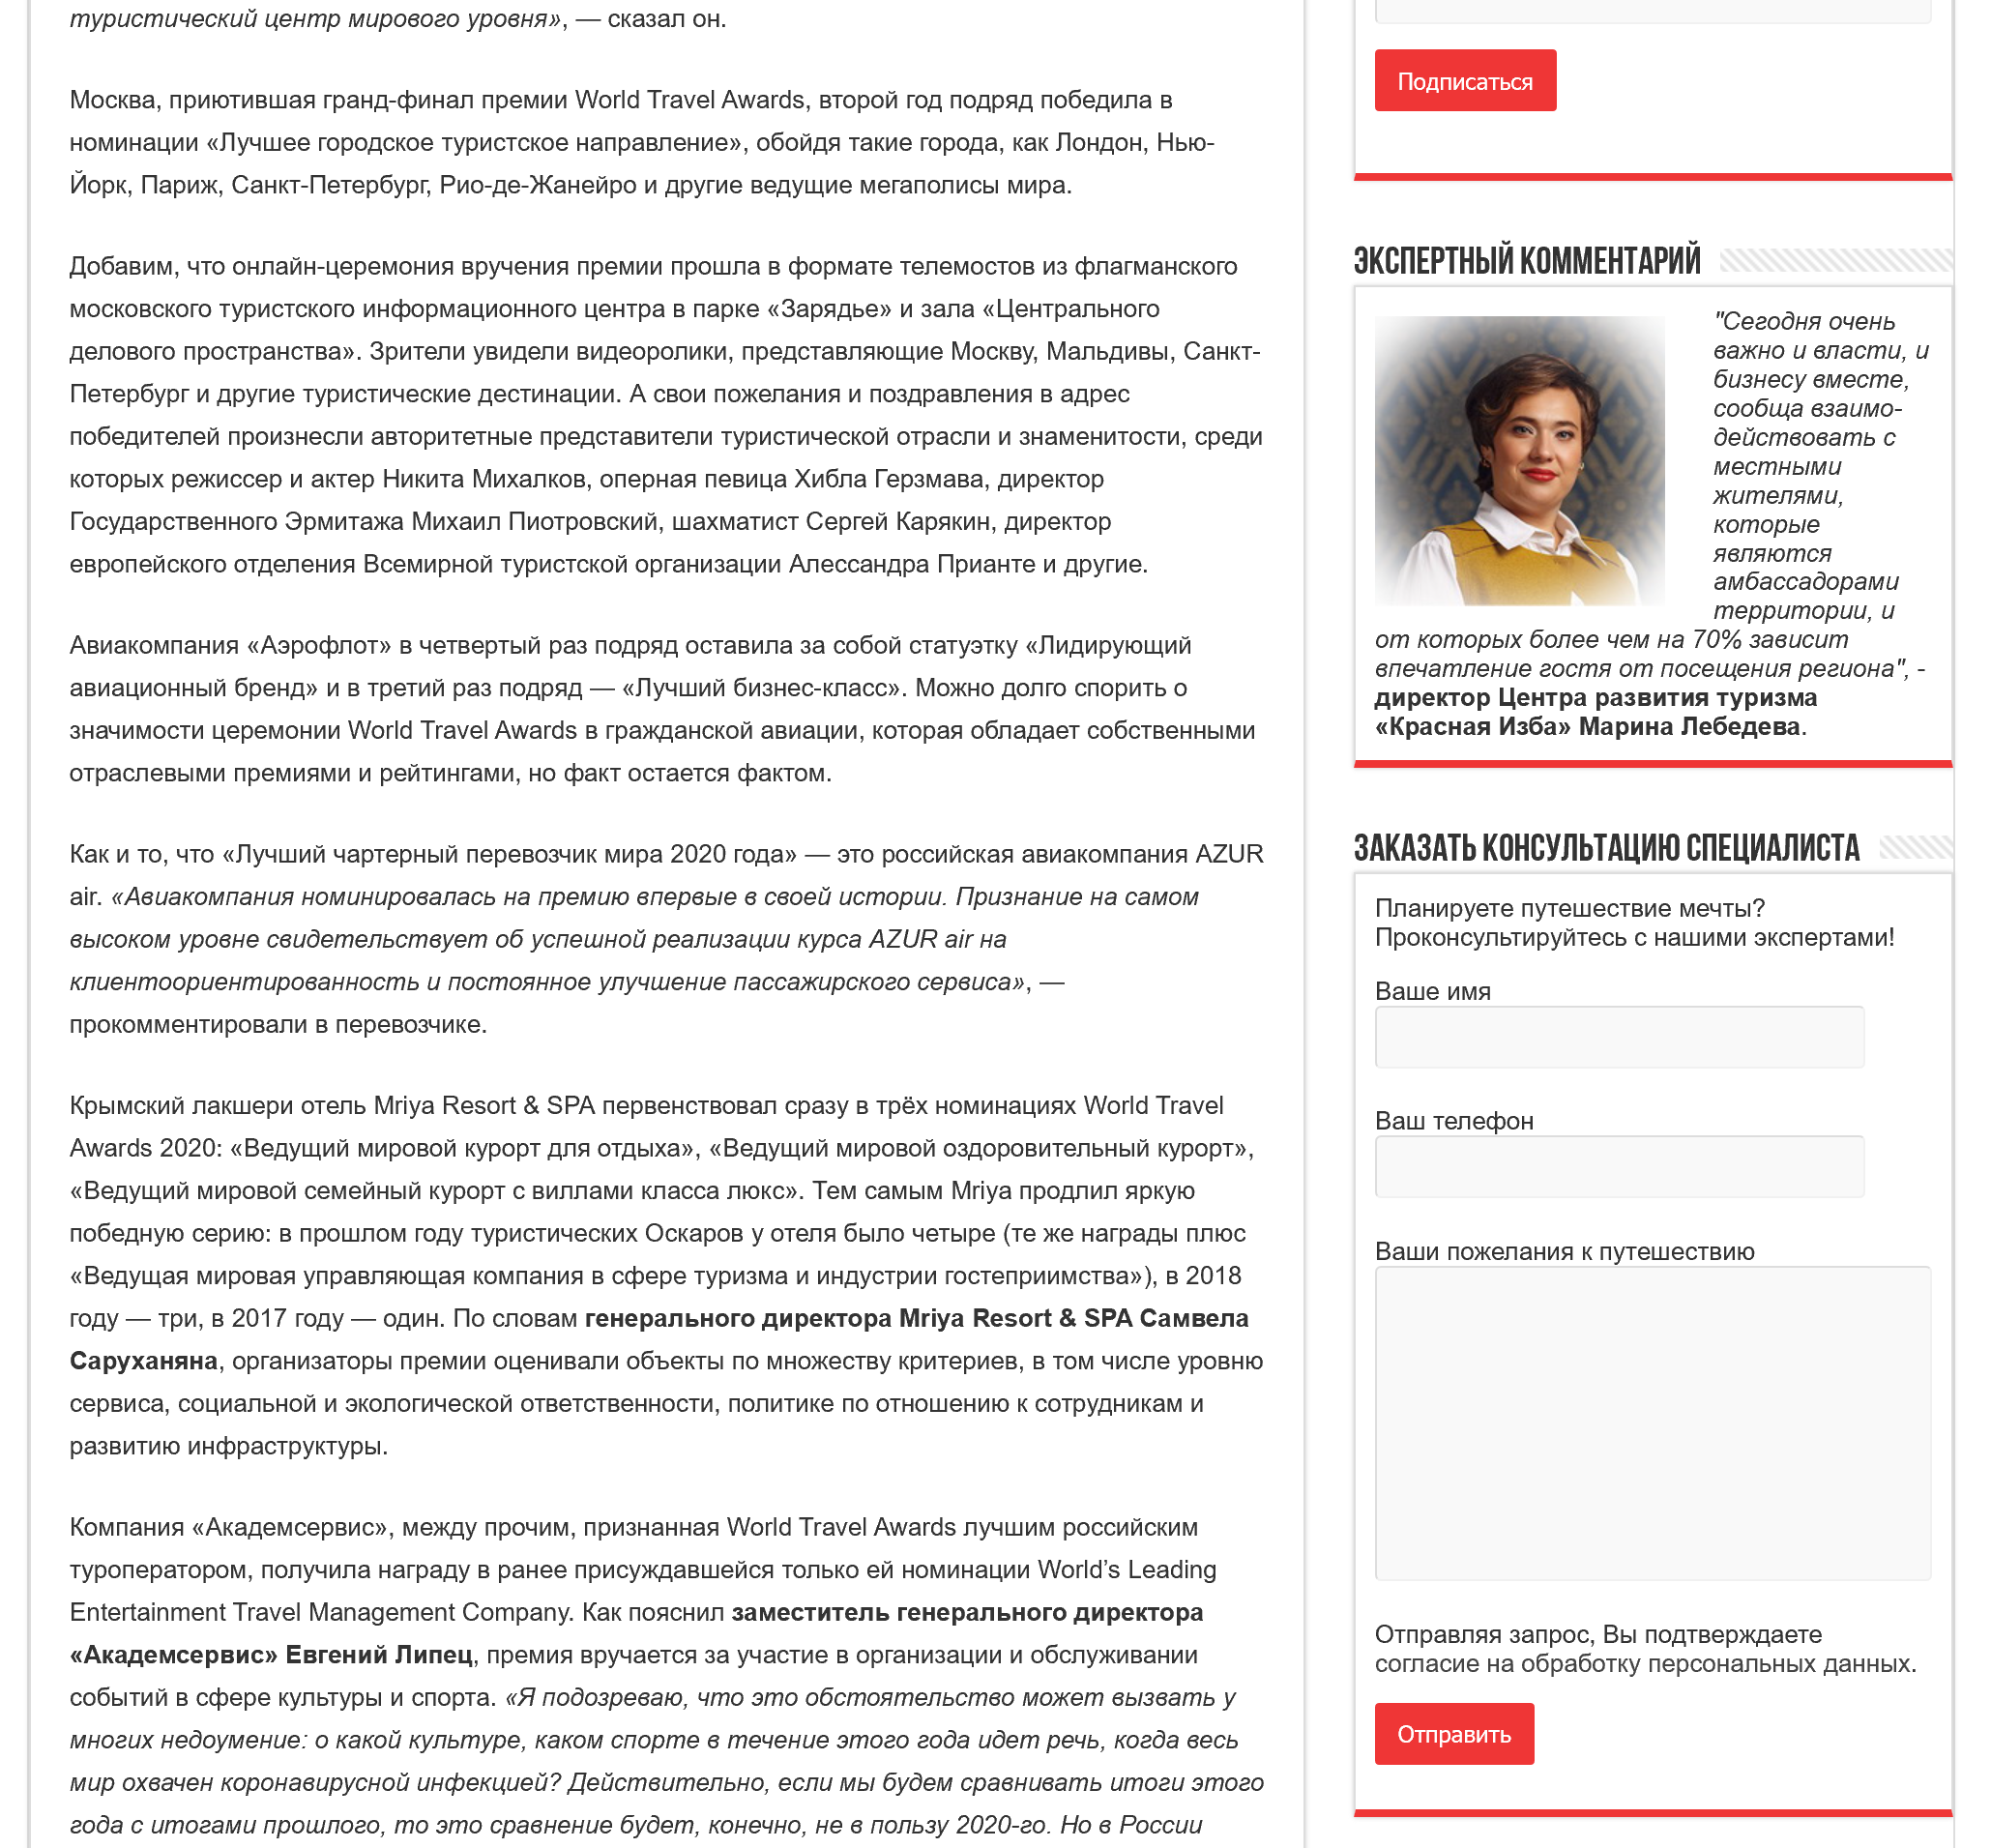 Интернет-журнал о российском туризме, RTourNews, 30.11.2020